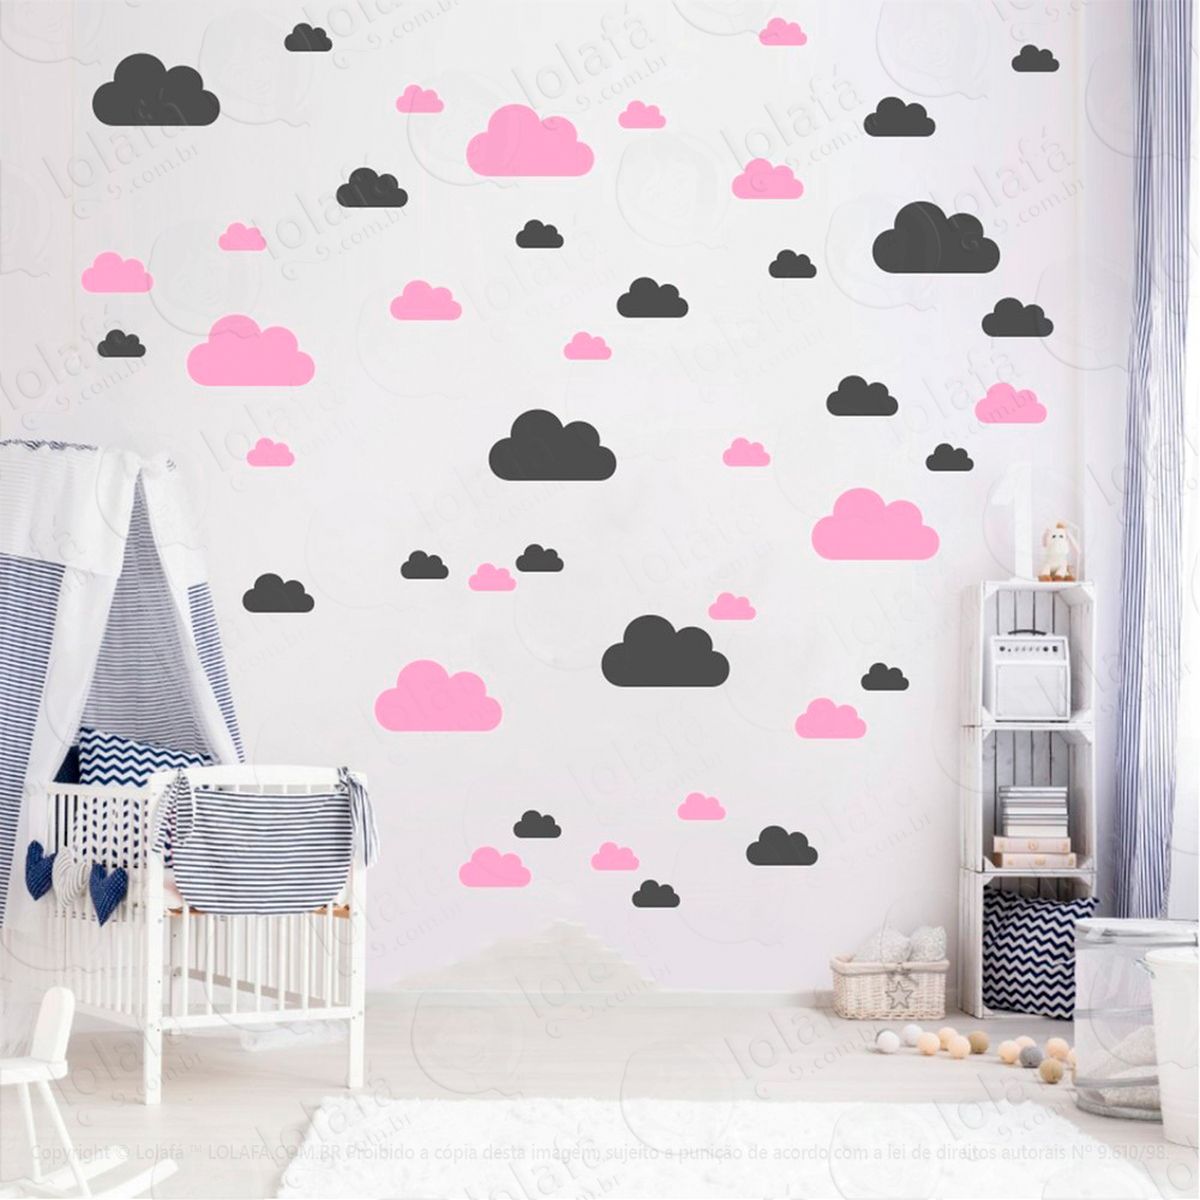 adesivos nuvens 78 peças adesivos para quarto de bebê infantil - mod:764